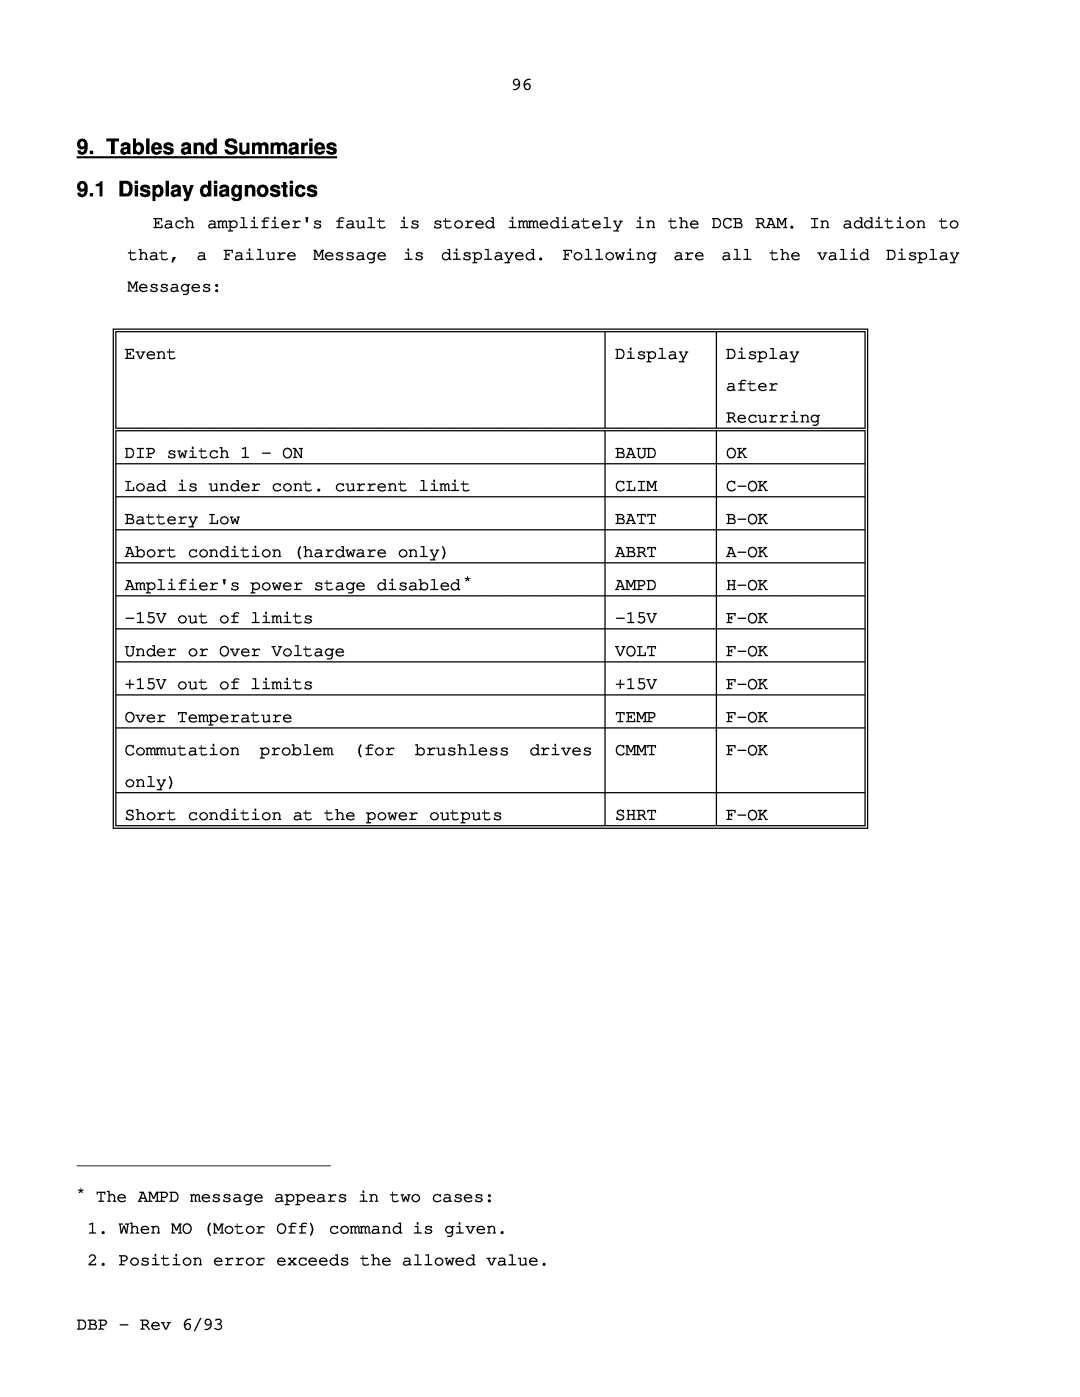 Elmo DBP SERIES manual Tables and Summaries 9.1 Display diagnostics 